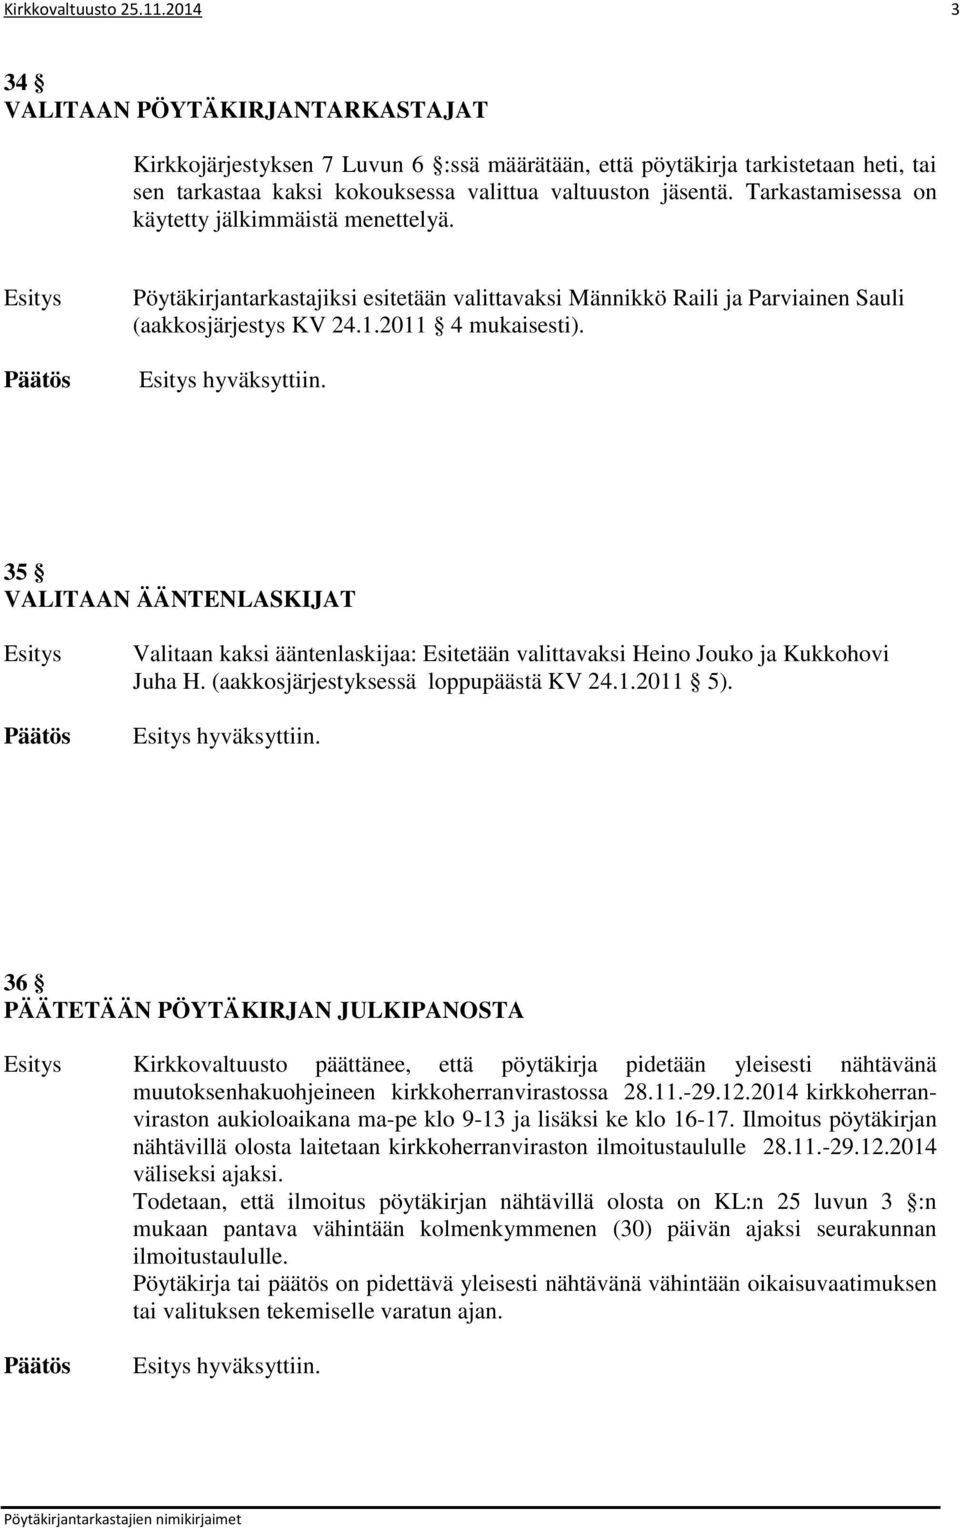 Tarkastamisessa on käytetty jälkimmäistä menettelyä. Pöytäkirjantarkastajiksi esitetään valittavaksi Männikkö Raili ja Parviainen Sauli (aakkosjärjestys KV 24.1.2011 4 mukaisesti). hyväksyttiin.